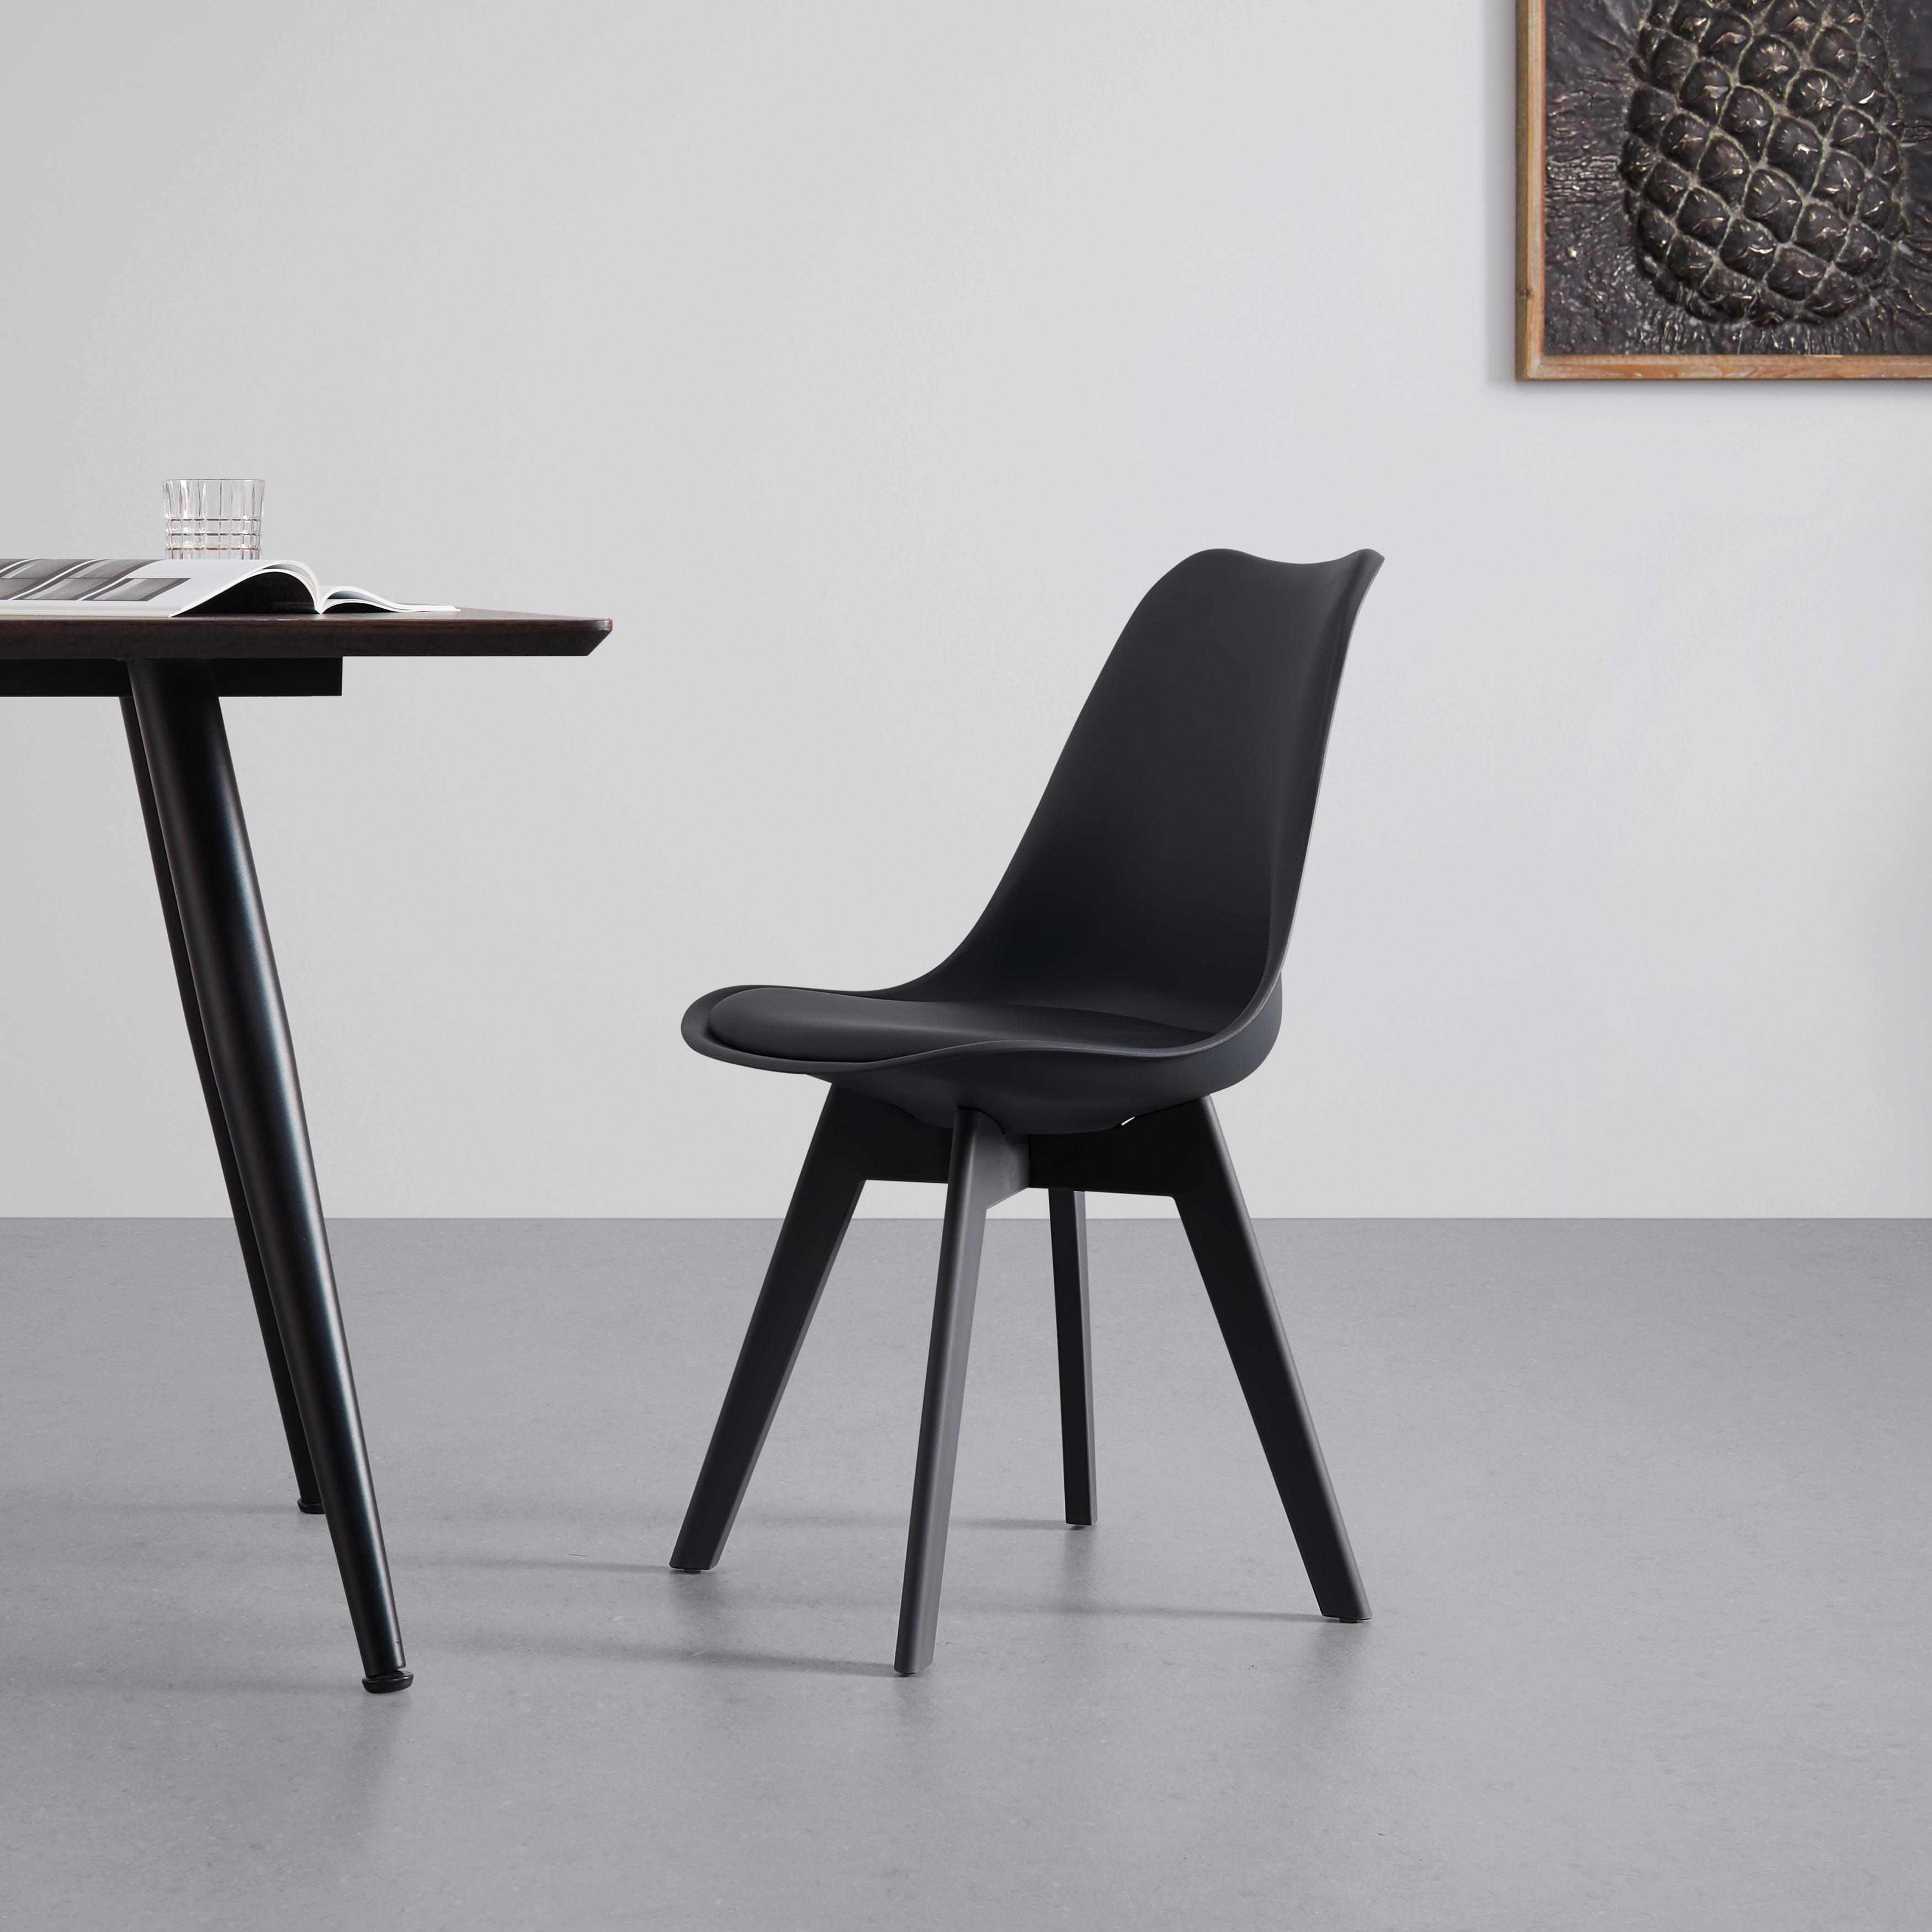 Židle Mia Černá - černá, Moderní, textil/plast (50/84/54cm) - P & B